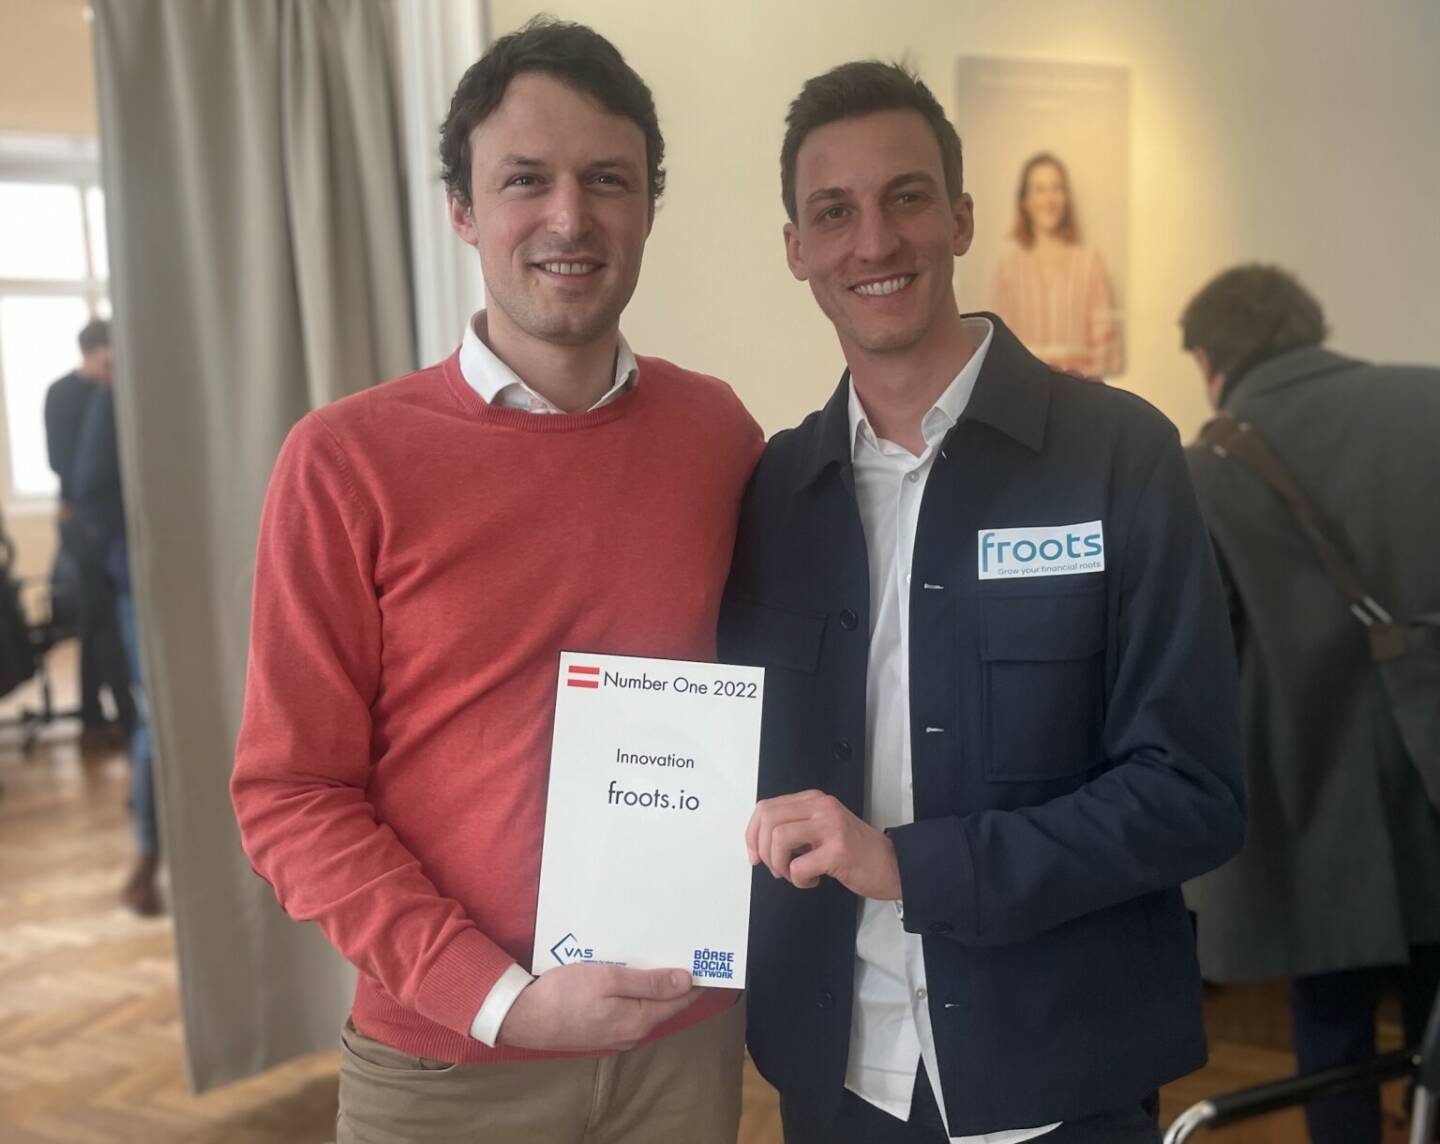 Gründer David Mayer-Heinisch und Investor Gregor Schlierenzauer übernehmen den Preis für den Number One Innovator 2022, den froots.io gewonnen hat